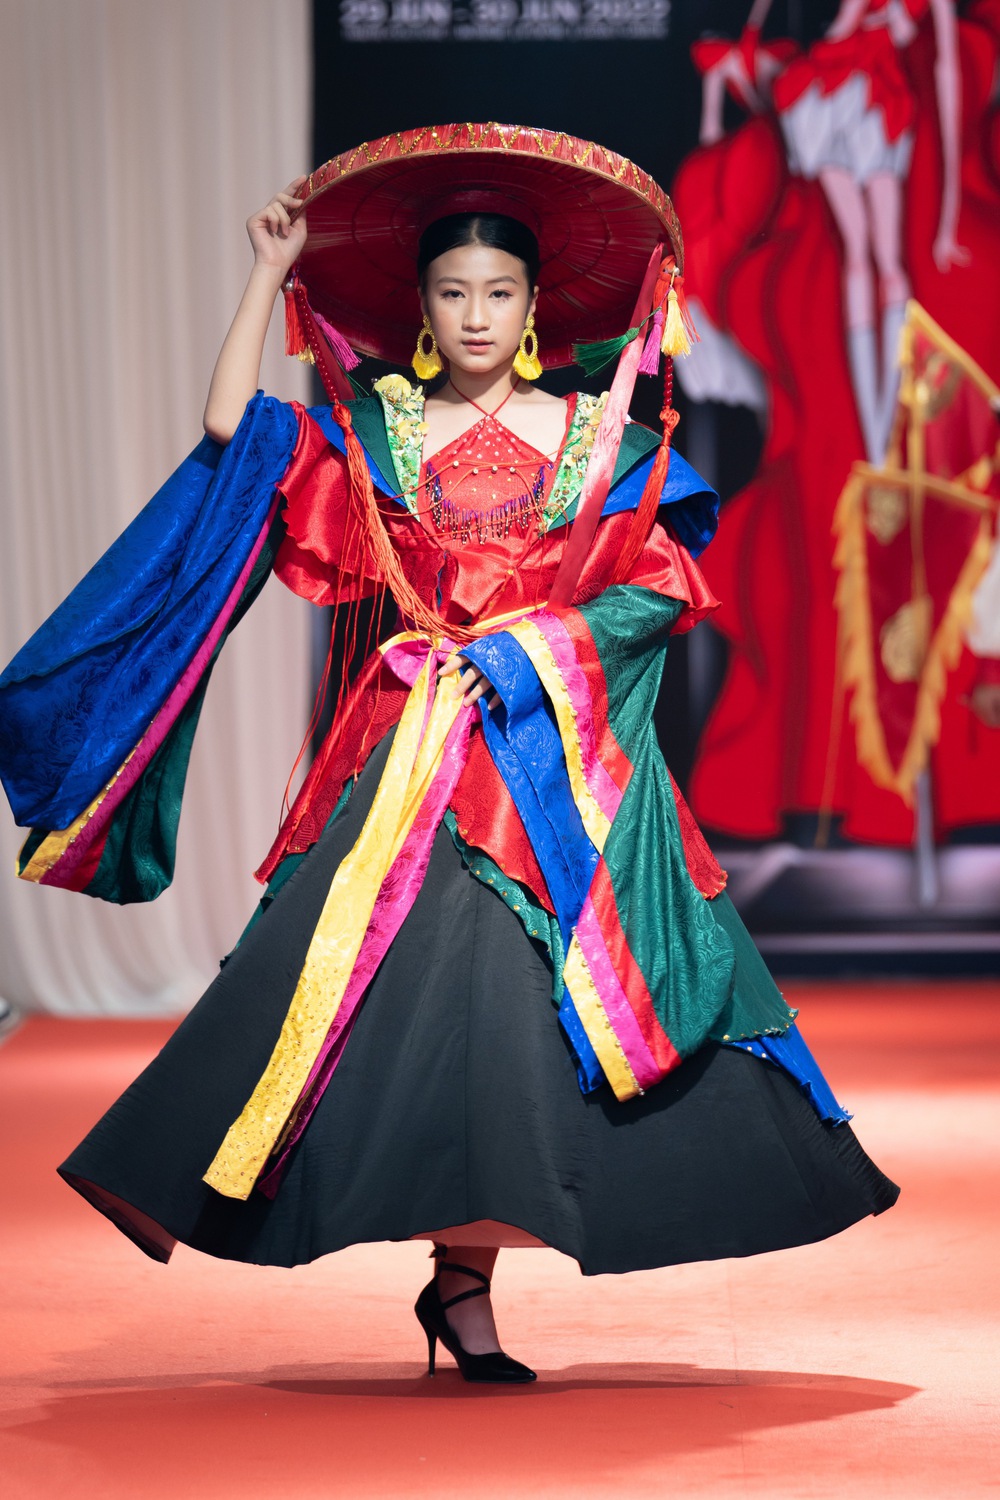 NTK Đắc Ngọc cùng dàn mẫu nhí nổi bật tại sàn diễn thời trang Thái Lan - Ảnh 4.